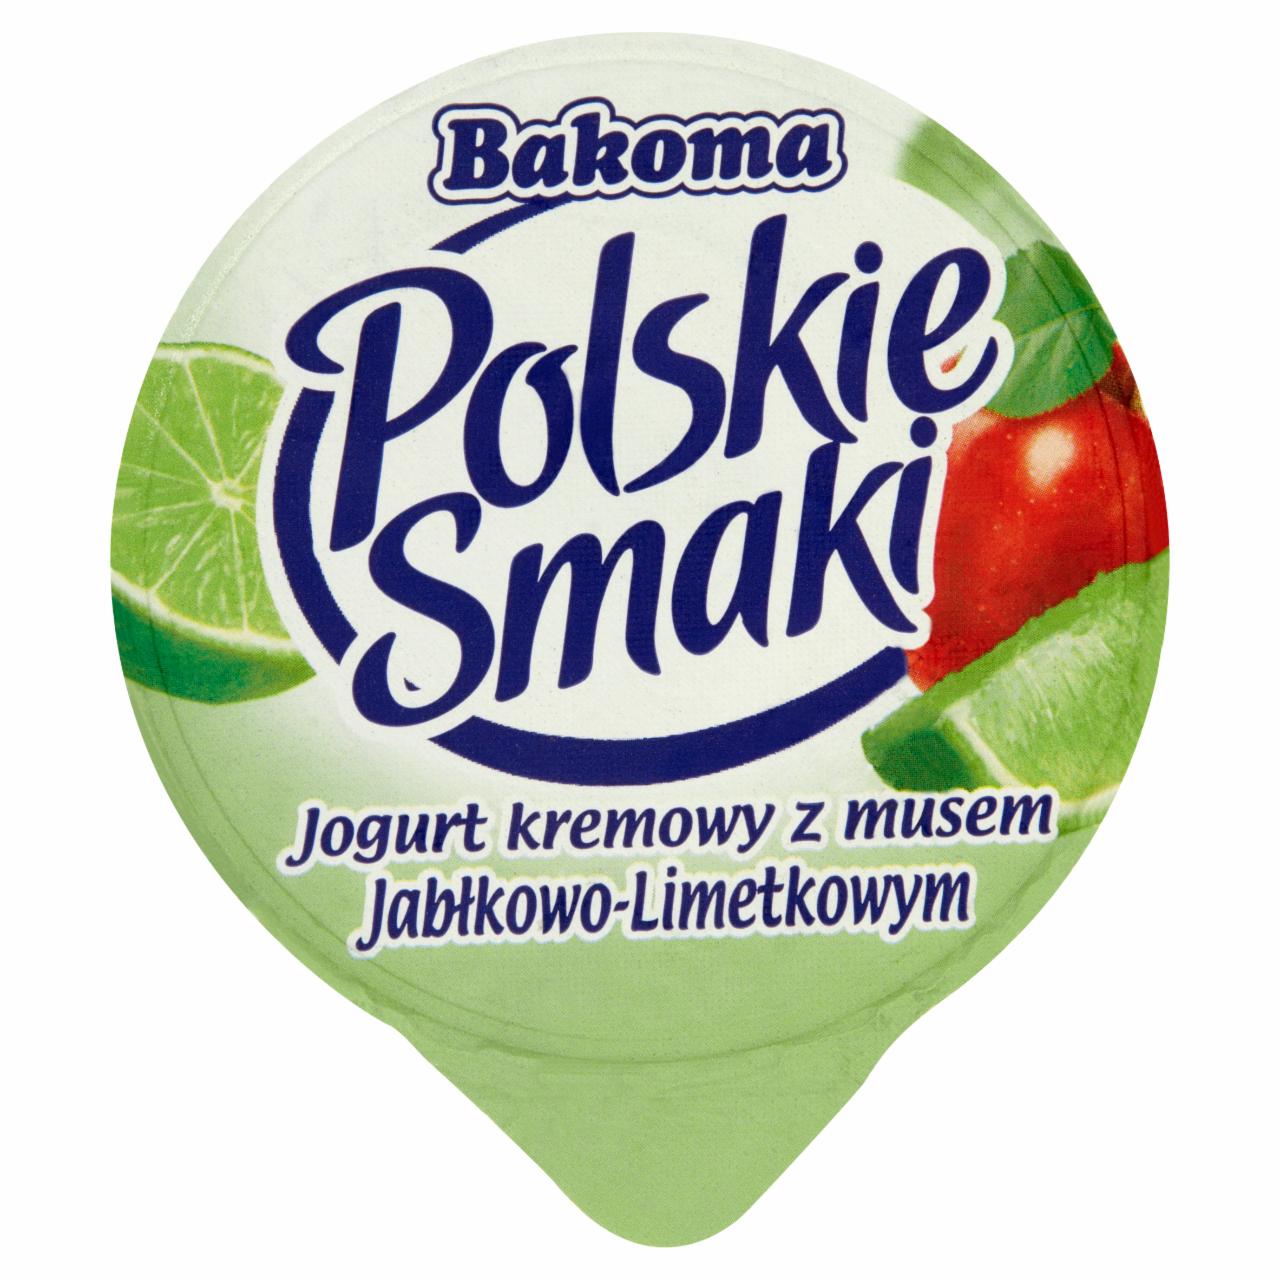 Zdjęcia - Bakoma Polskie Smaki Jogurt kremowy z musem jabłkowo-limetkowym 120 g